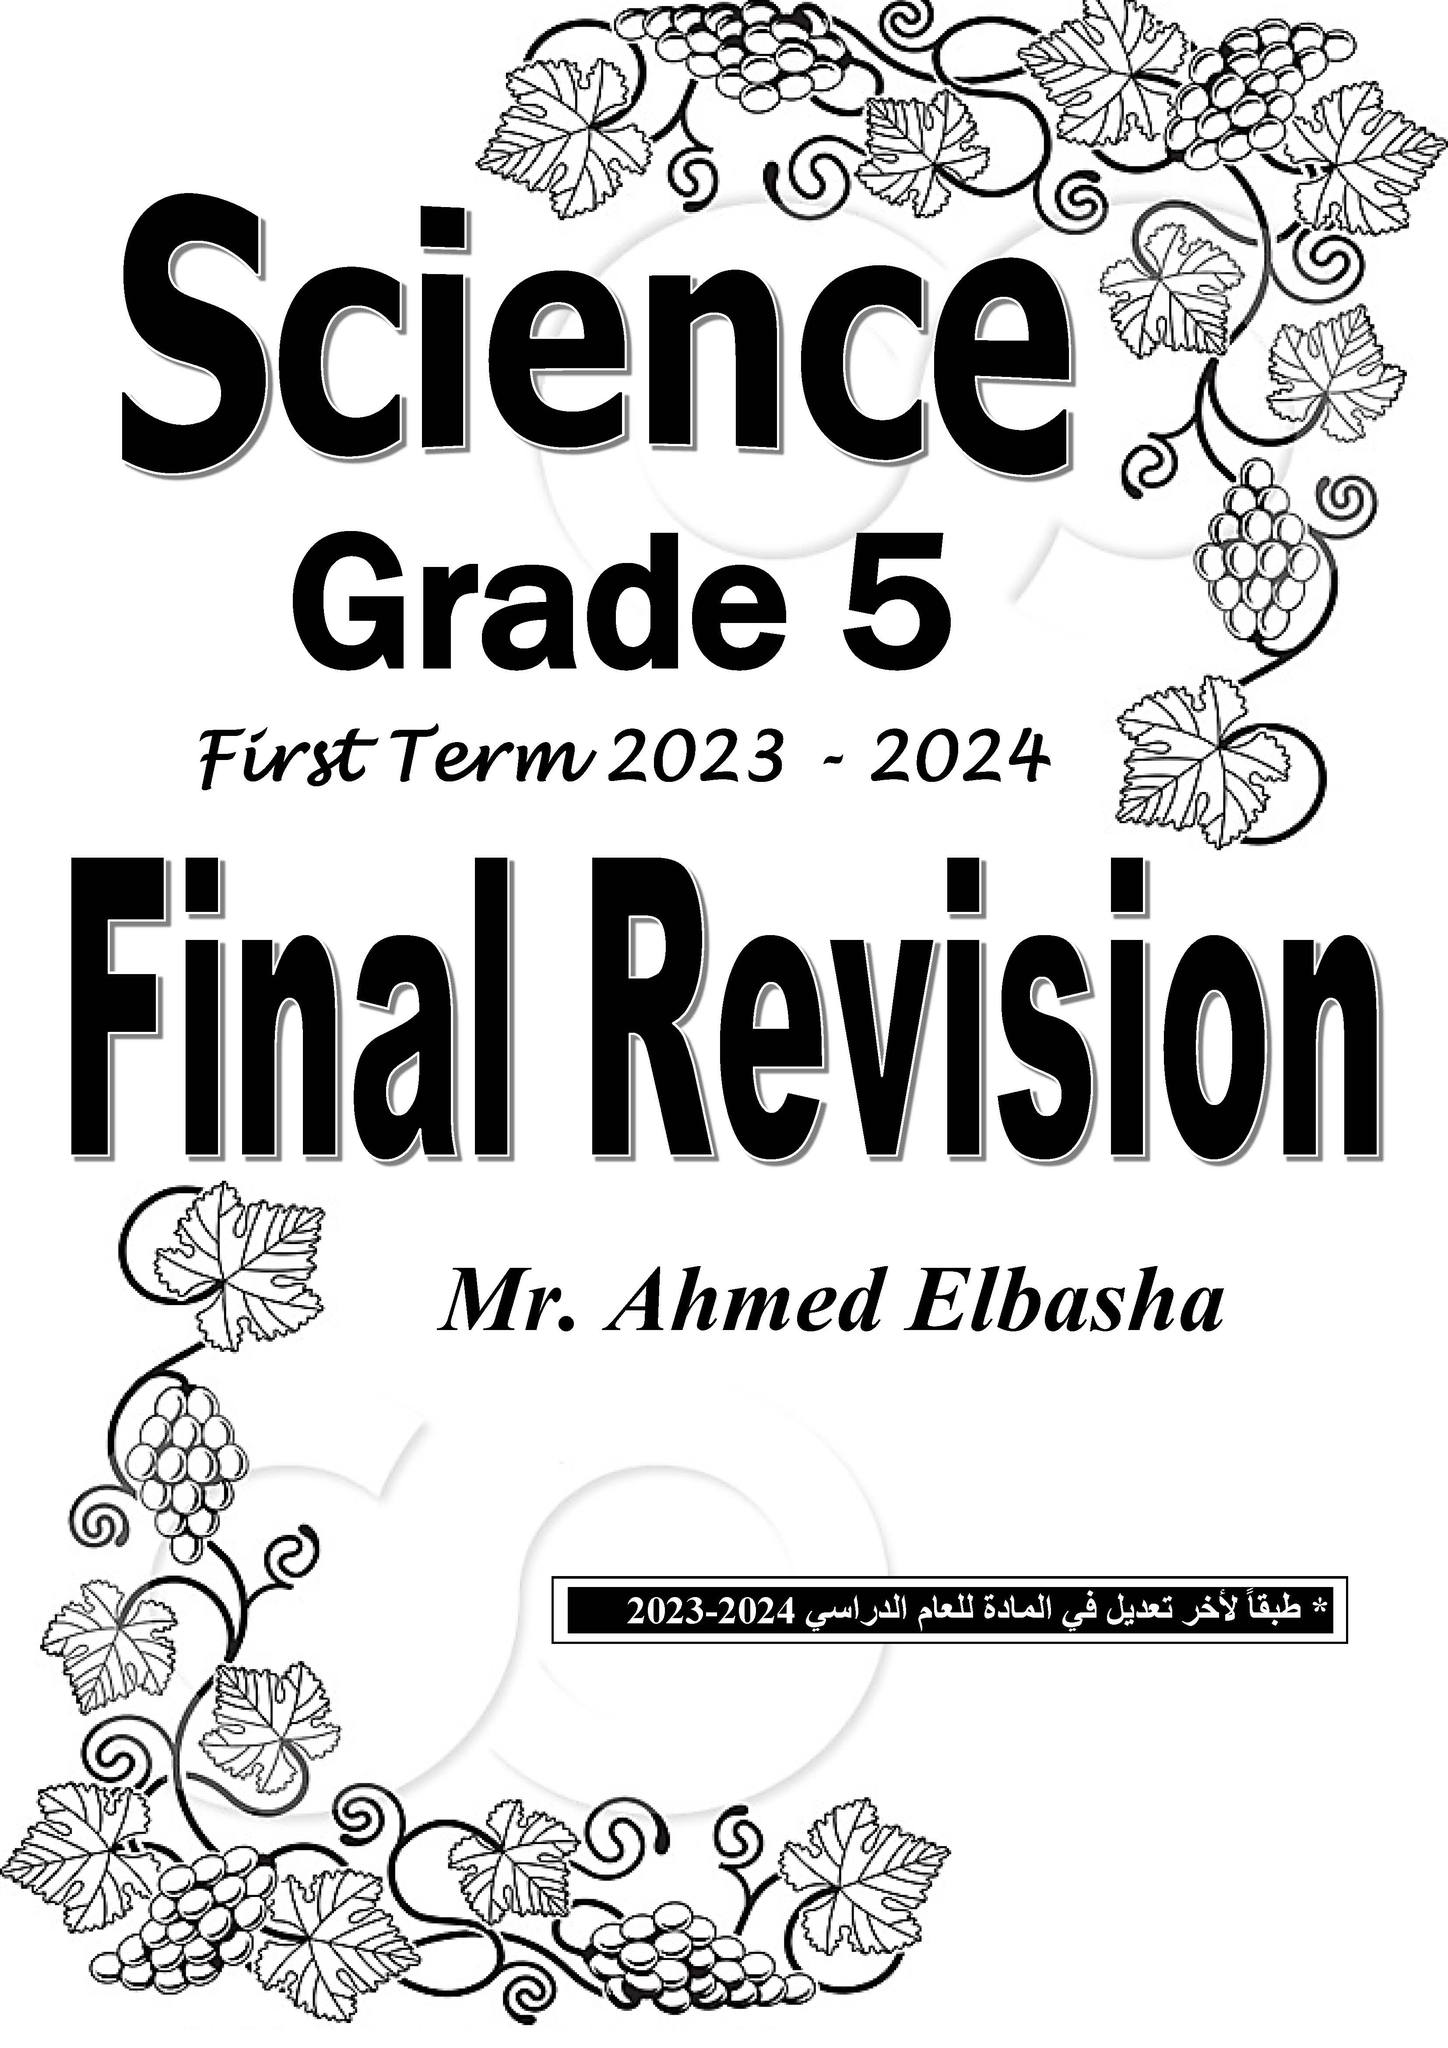 مدرس دوت كوم مراجعة نهائية فى الساينس بالإجابات للصف الخامس الابتدائي الترم الأول 2024 أ/ أحمد الباشا	